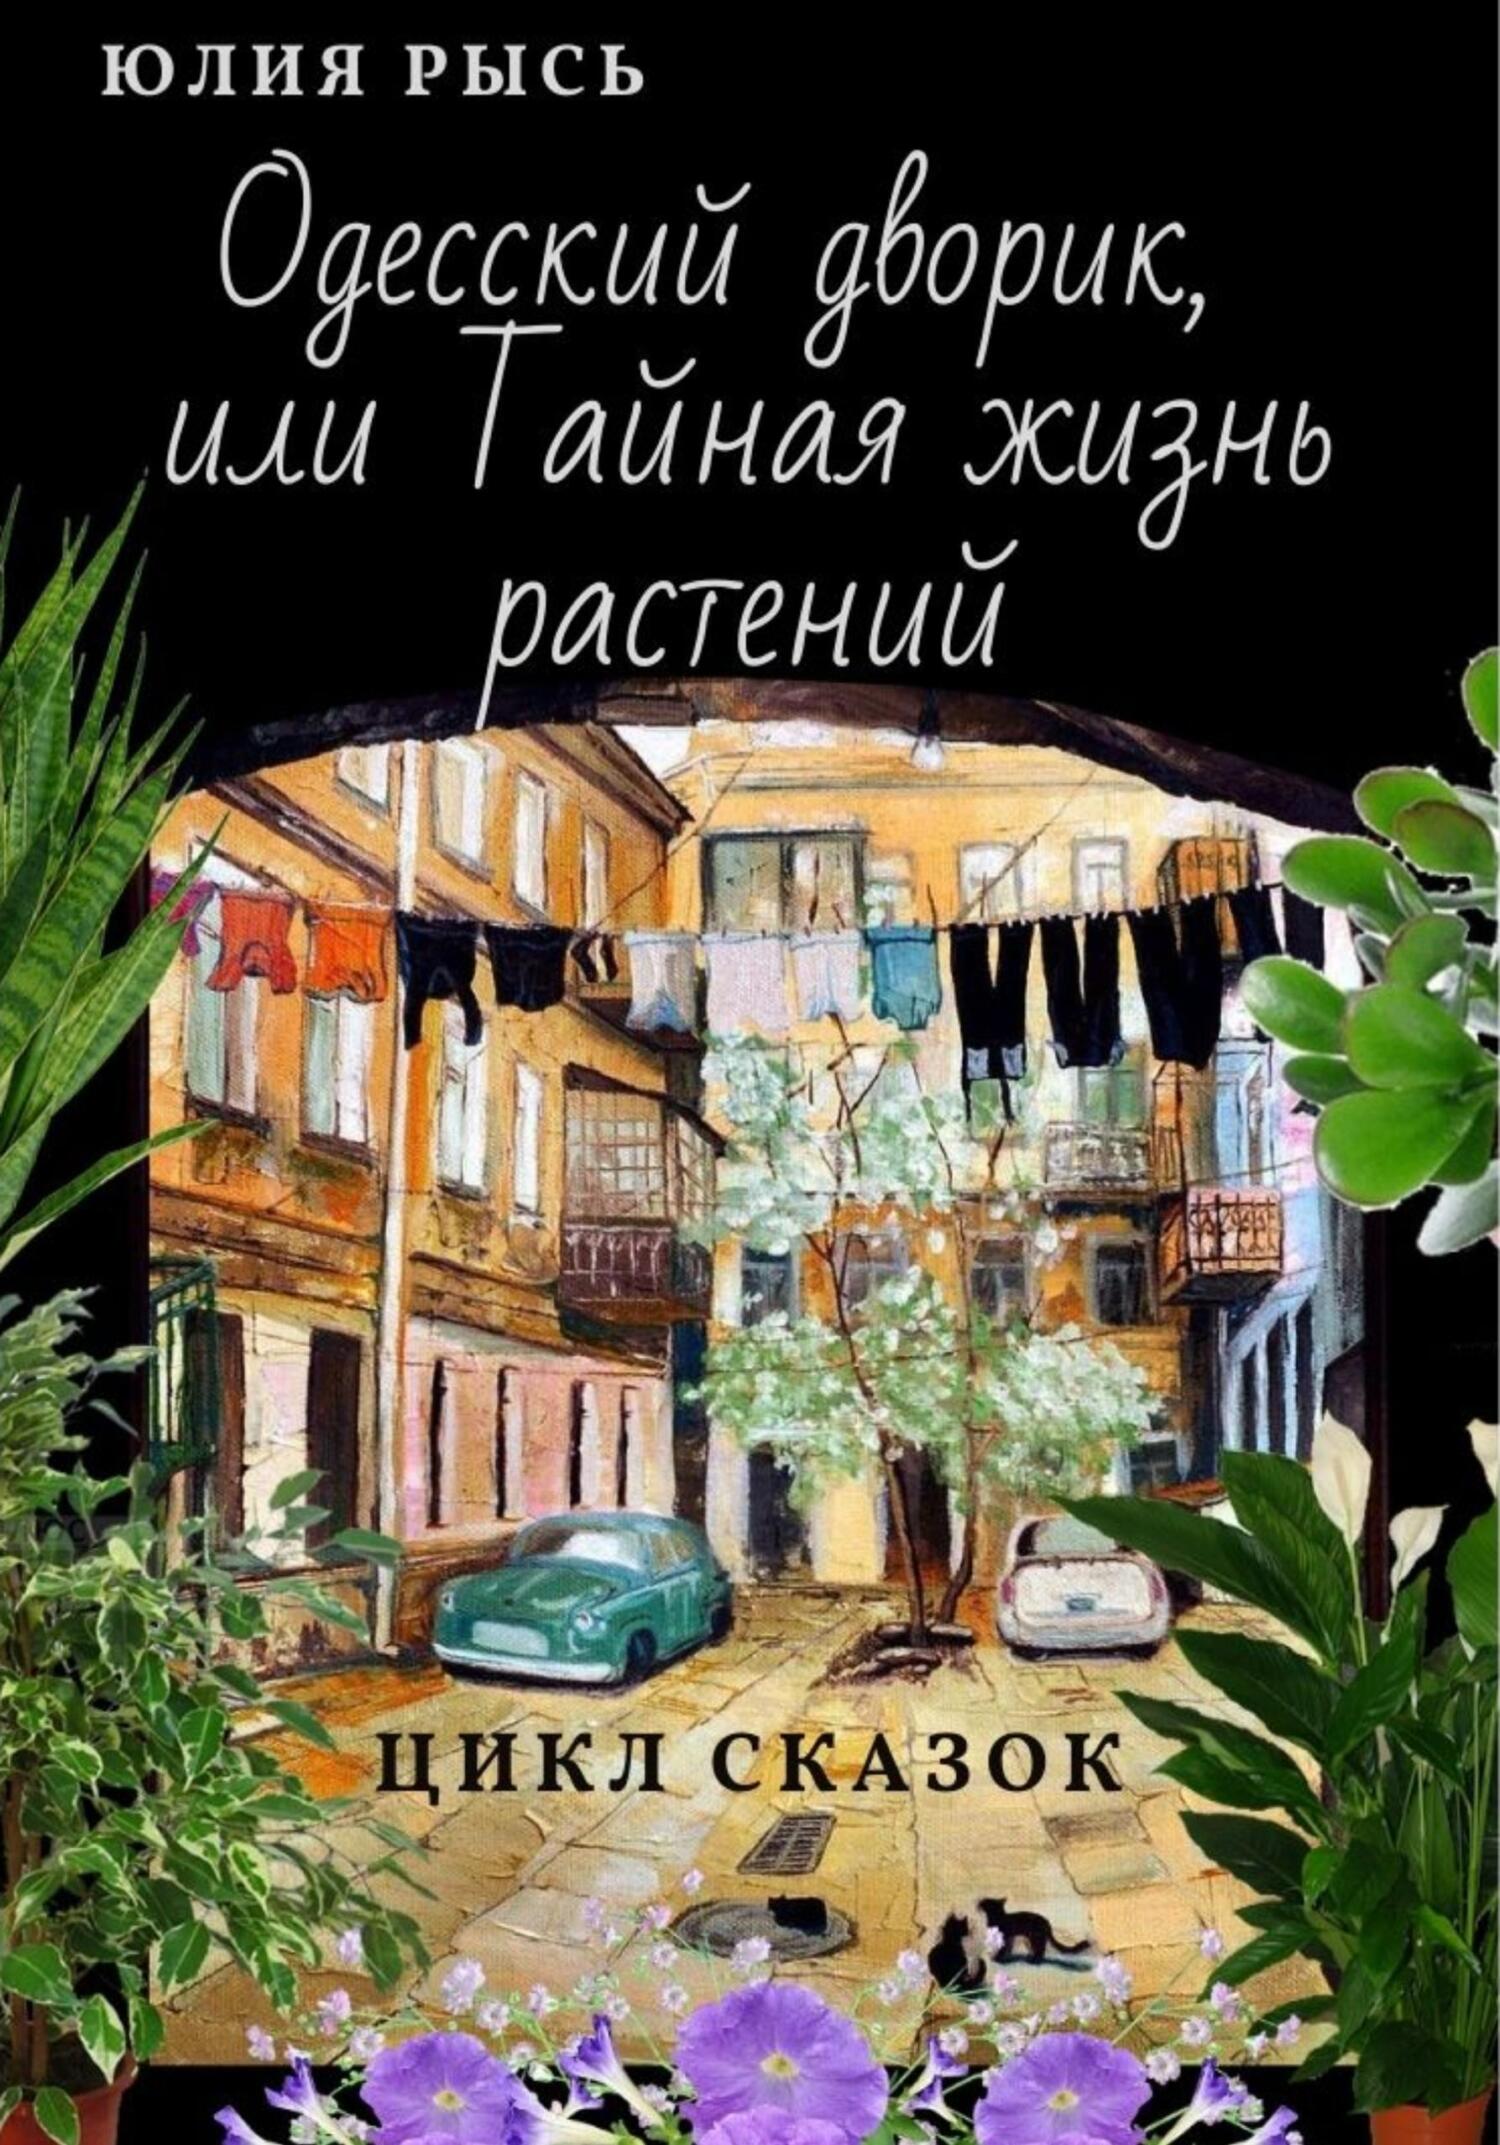 Одесский дворик, или Тайная жизнь растений - Юлия Рысь